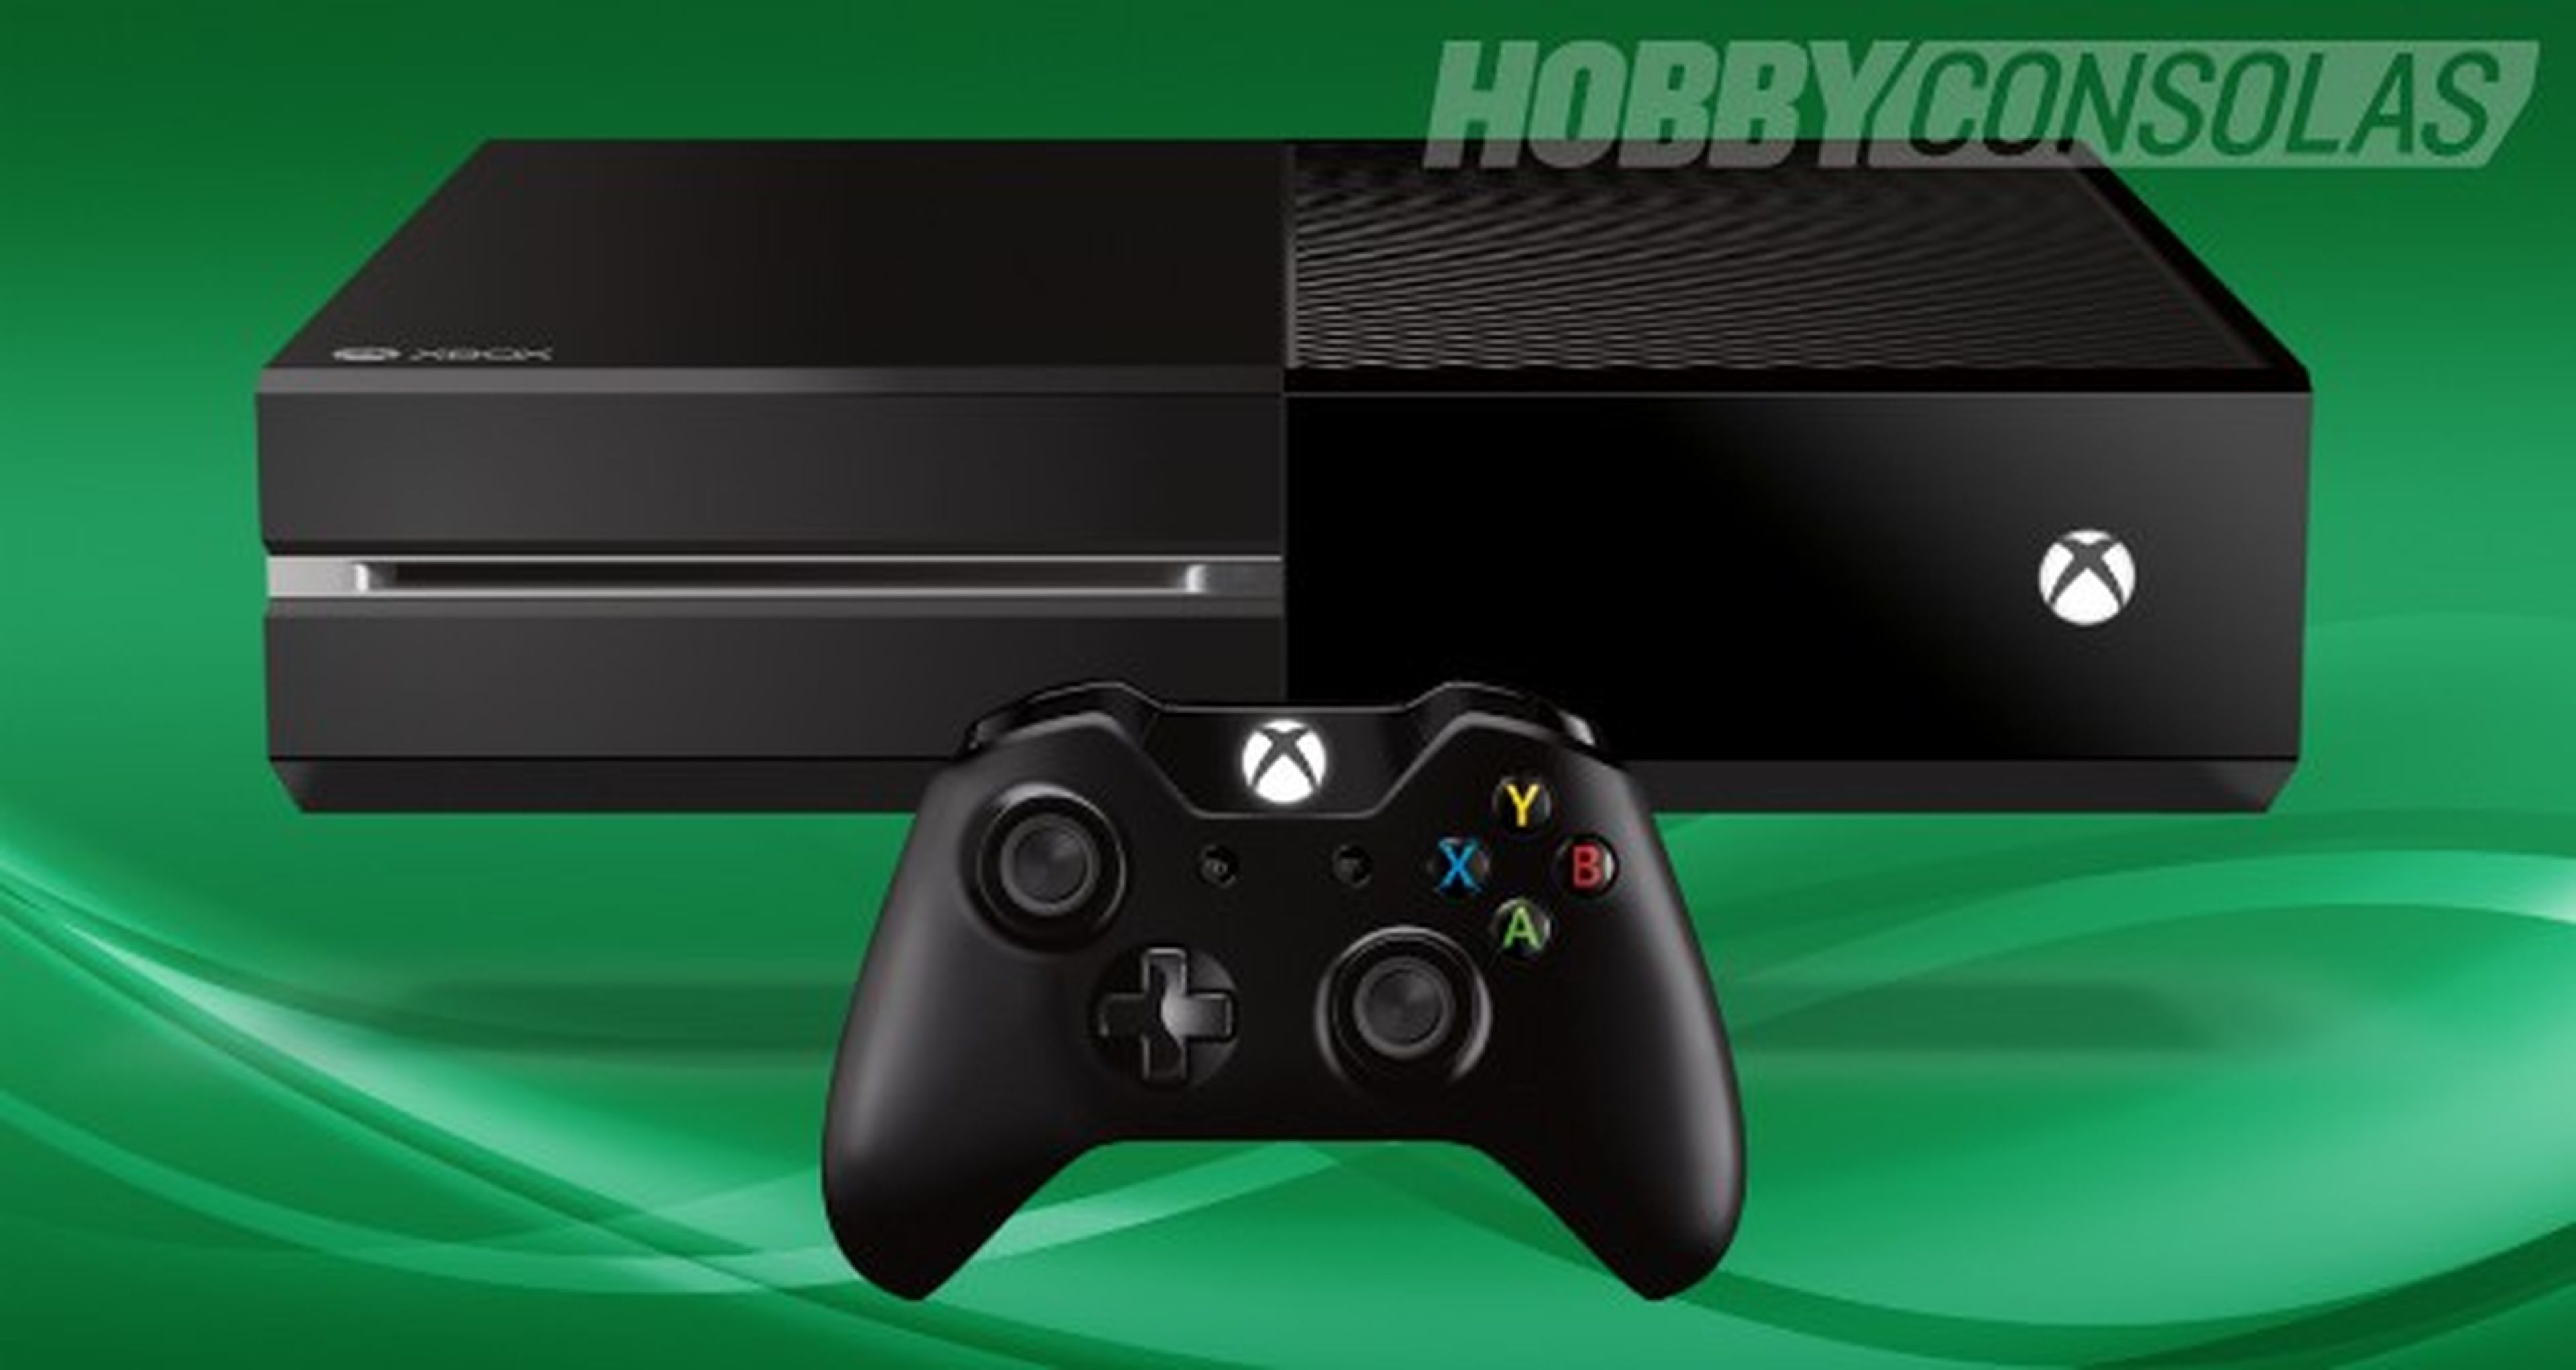 Xbox One - Modelo Slim a finales de 2016 y nuevo modelo más potente en 2017 (rumor)